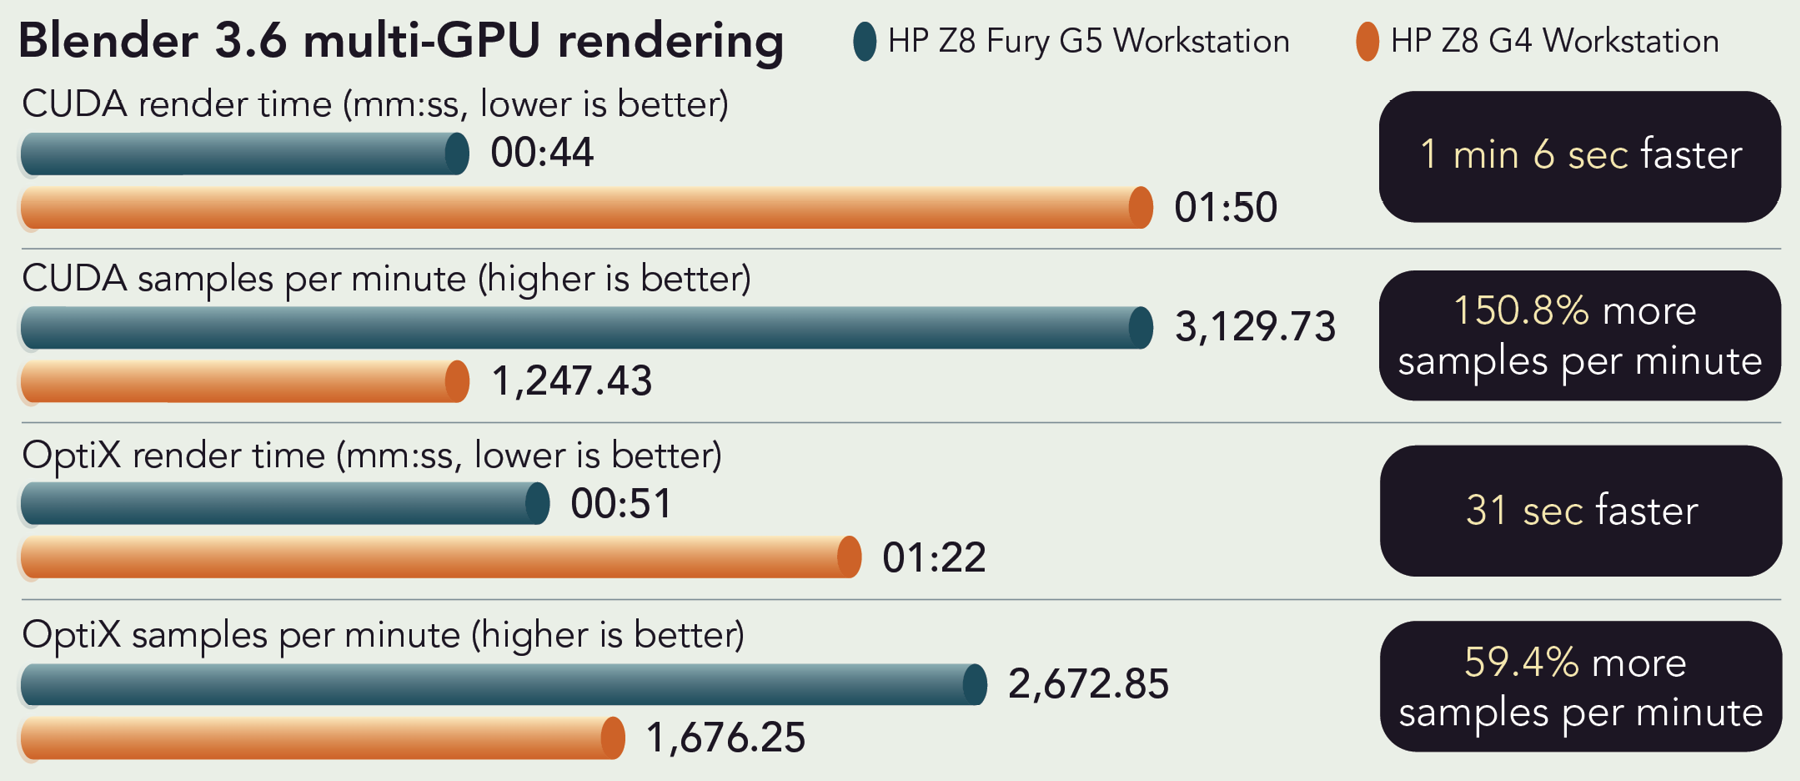 Chart of Blender 3.6 multi-GPU rendering results. CUDA render time. Lower is better. HP Z8 Fury G5 Workstation render time is 44 seconds and HP Z8 G4 Workstation render time is one minute and 50 seconds. One minute and 6 seconds faster. CUDA samples per minute. Higher is better. HP Z8 Fury G5 Workstation is 3,129.73 samples per minute and HP Z8 G4 Workstation is 1,247.43 samples per minute. 150.8 percent more samples per minute. OptiX render time. Lower is better. HP Z8 Fury G5 Workstation render time is 51 seconds and HP Z8 G4 Workstation render time is one minute and 22 seconds. 31 seconds faster. OptiX samples per minute. Higher is better. HP Z8 Fury G5 Workstation is 2,672.85 samples per minute and HP Z8 G4 Workstation is 1,676.25 samples per minute. 59.4 percent more samples per minute.